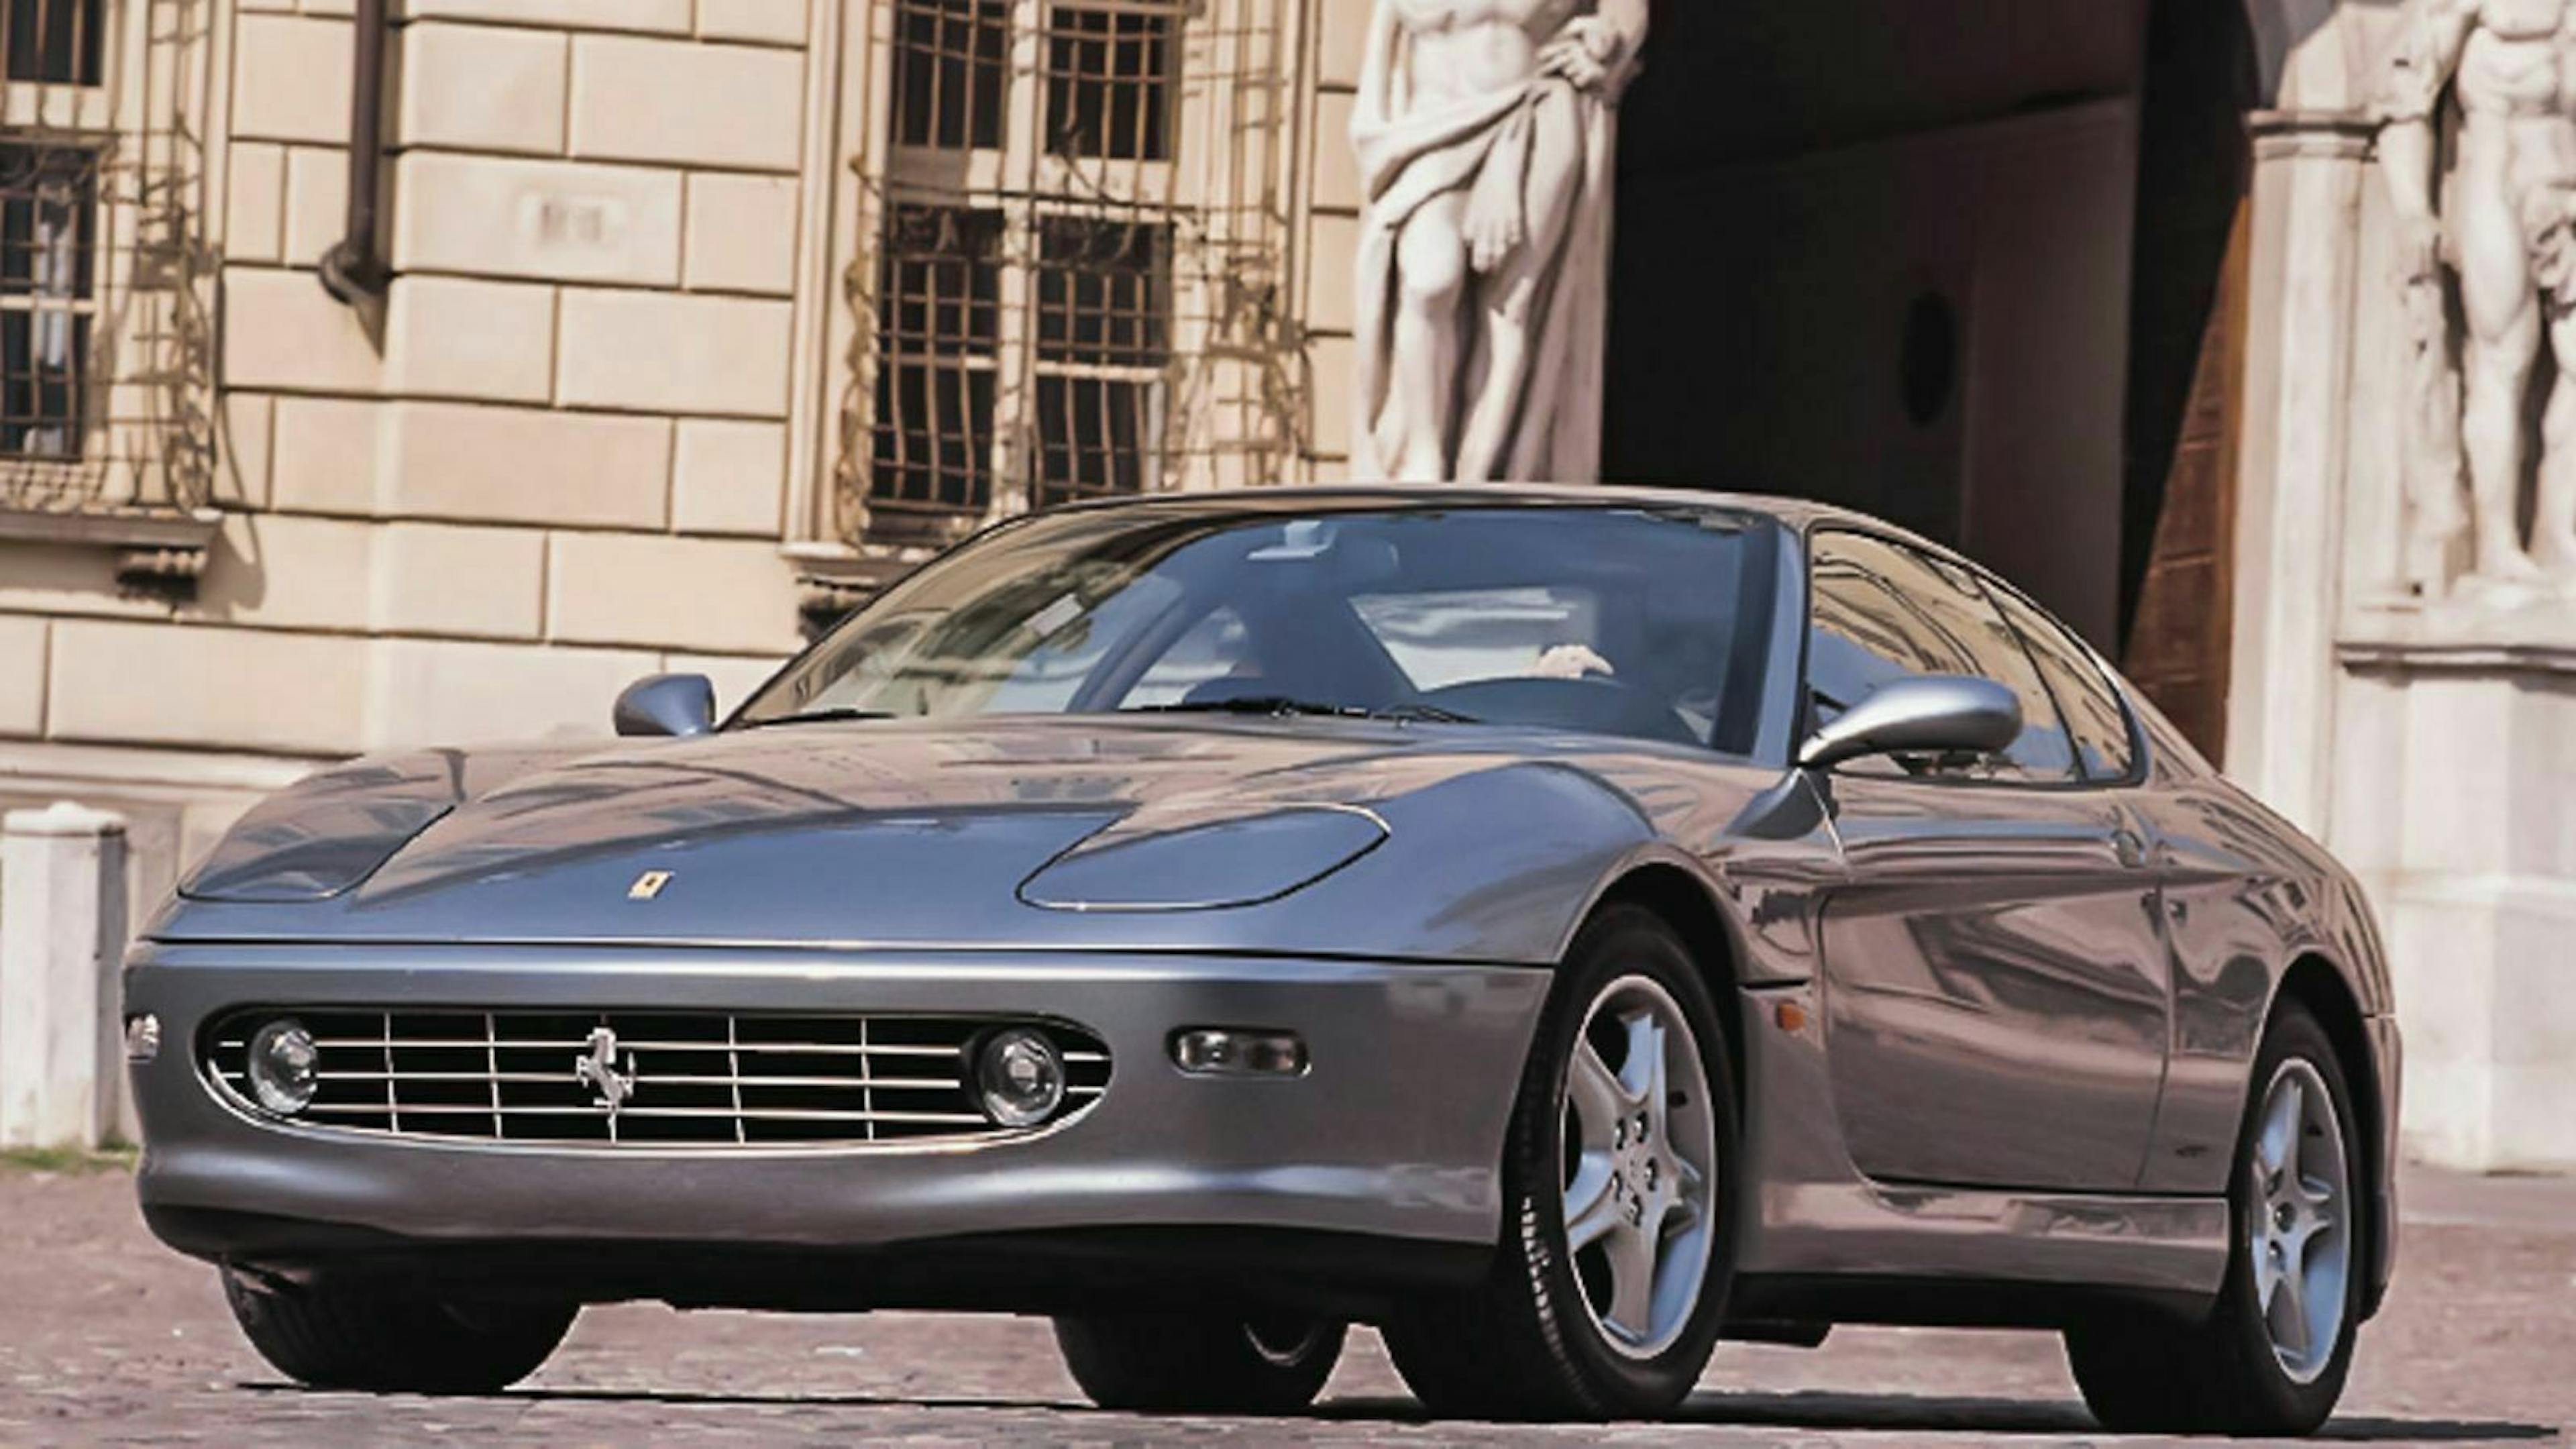 Ferrari 456 in der Frontansicht, stehend